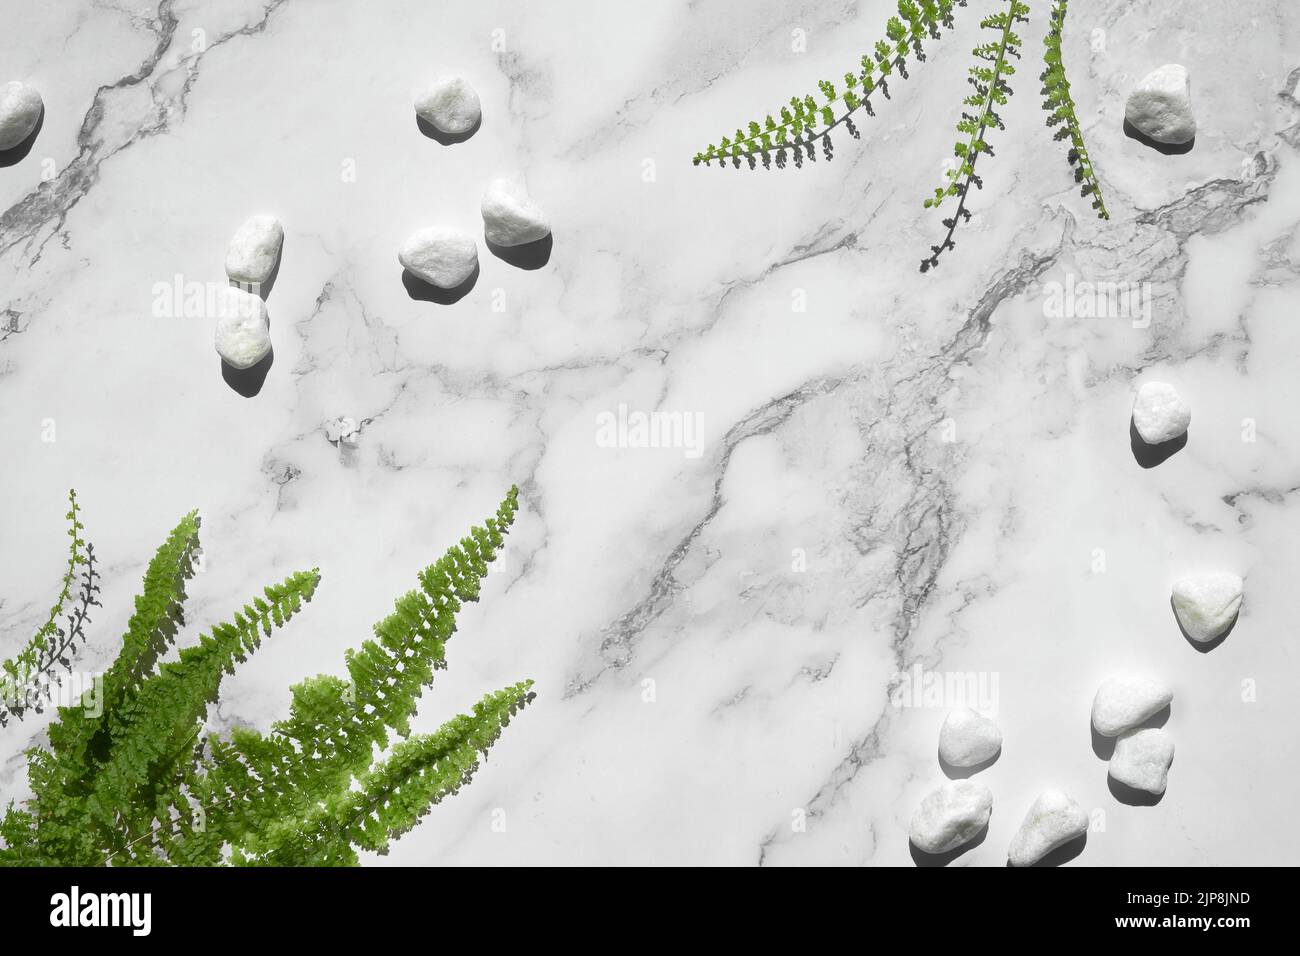 Piedra natural fondo de mármol blanco con exóticas hojas de helecho y piedras blancas. Foto de stock